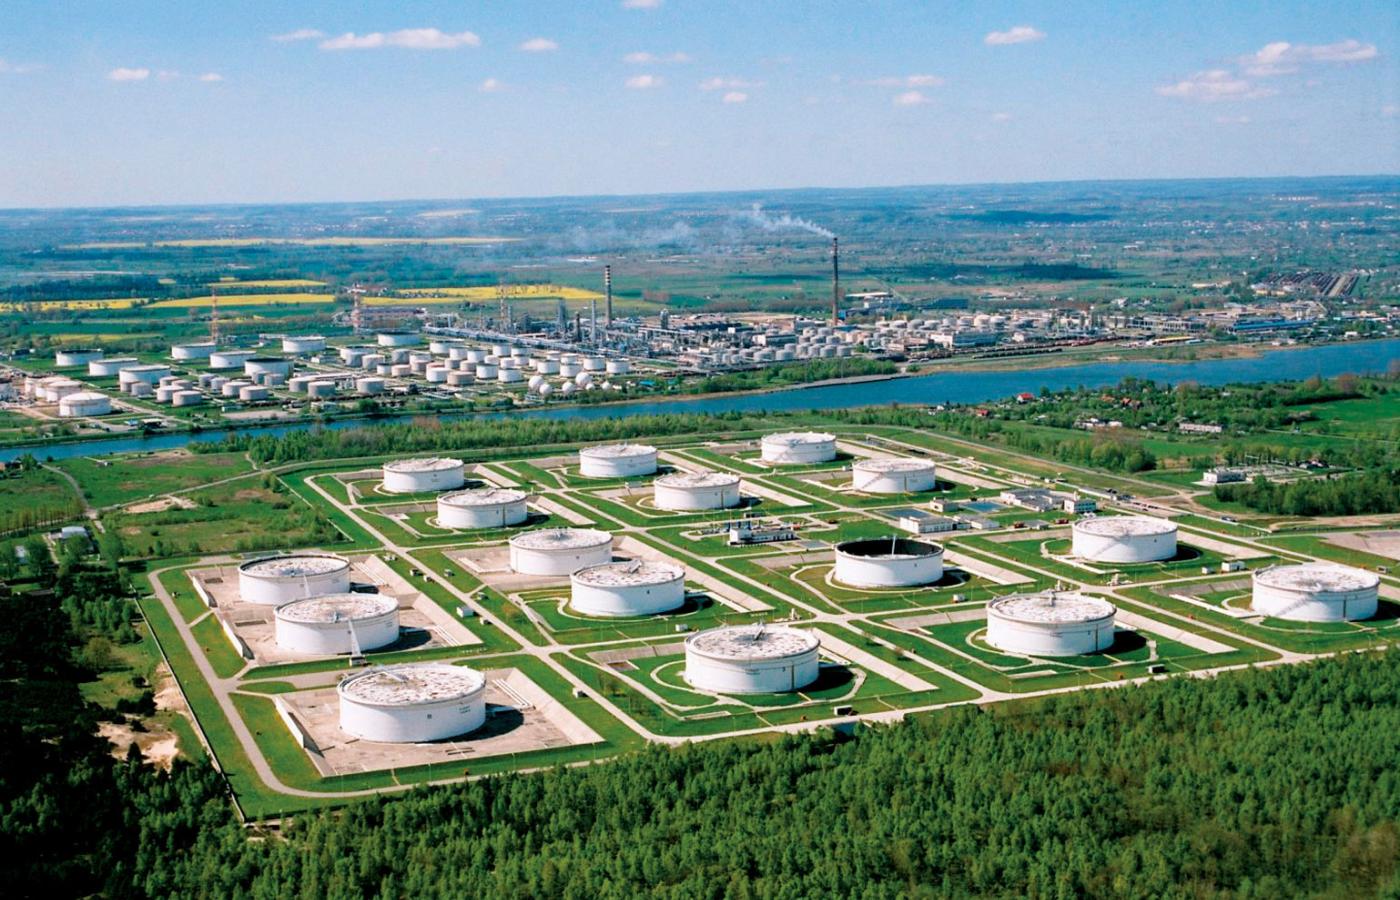 Magazyny ropy naftowej, którymi zarządza Grupa PERN.